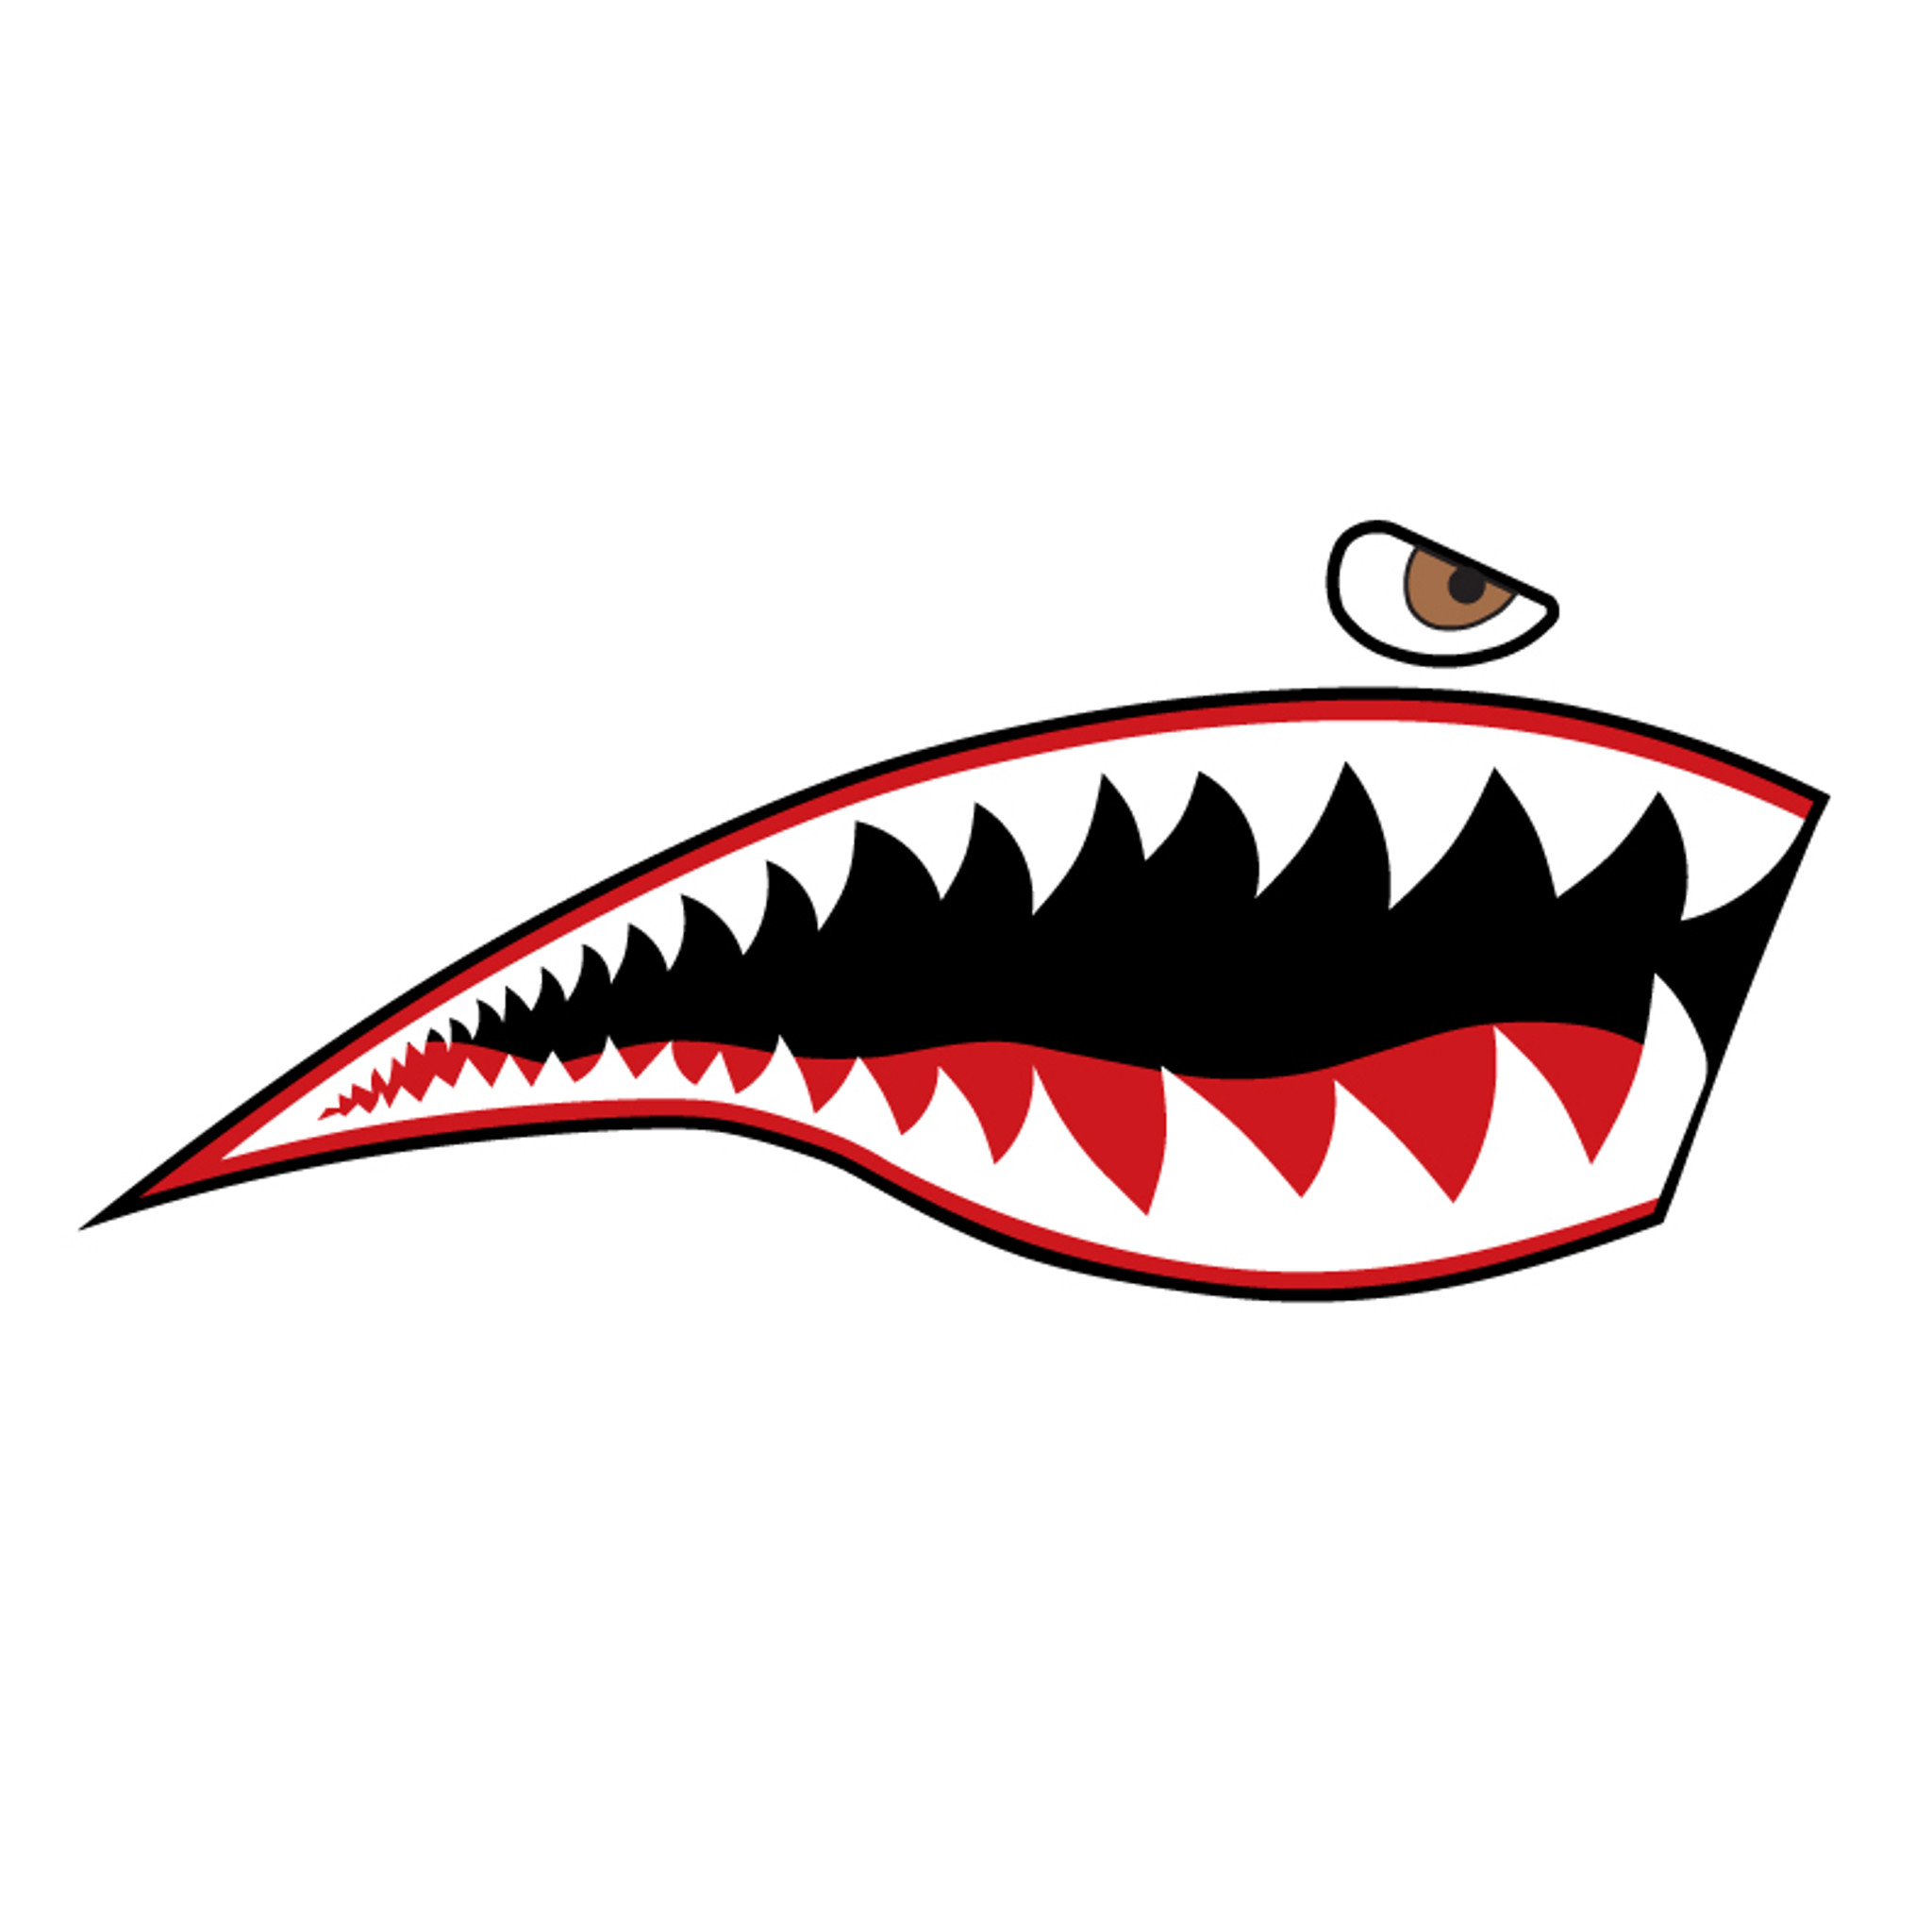 shark mouth stencil